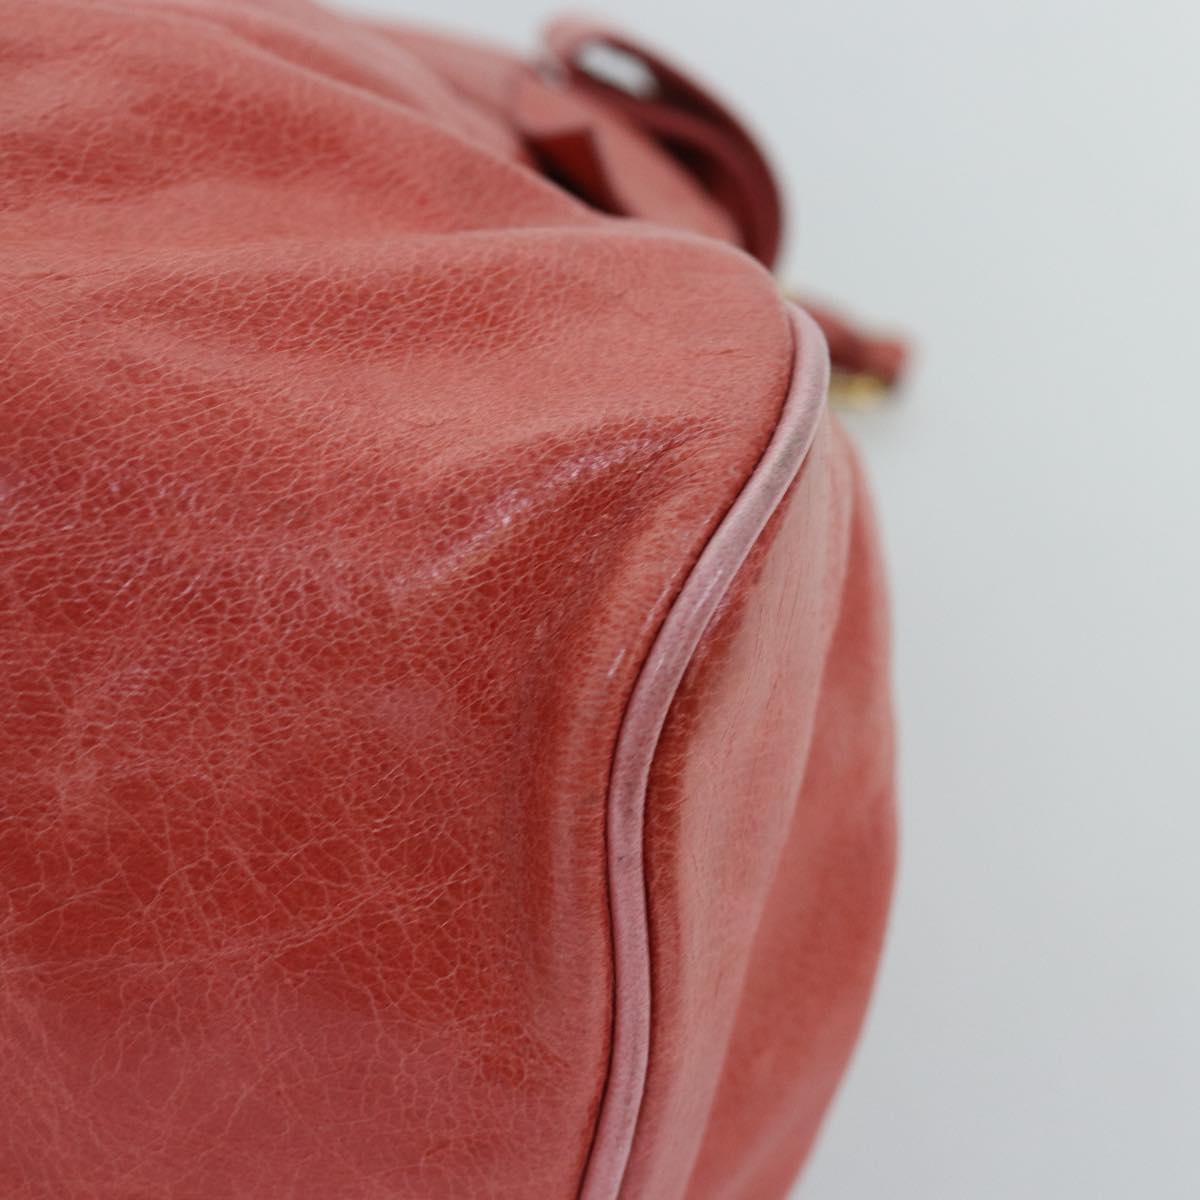 Miu Miu Hand Bag Leather 2way Pink Auth am6140